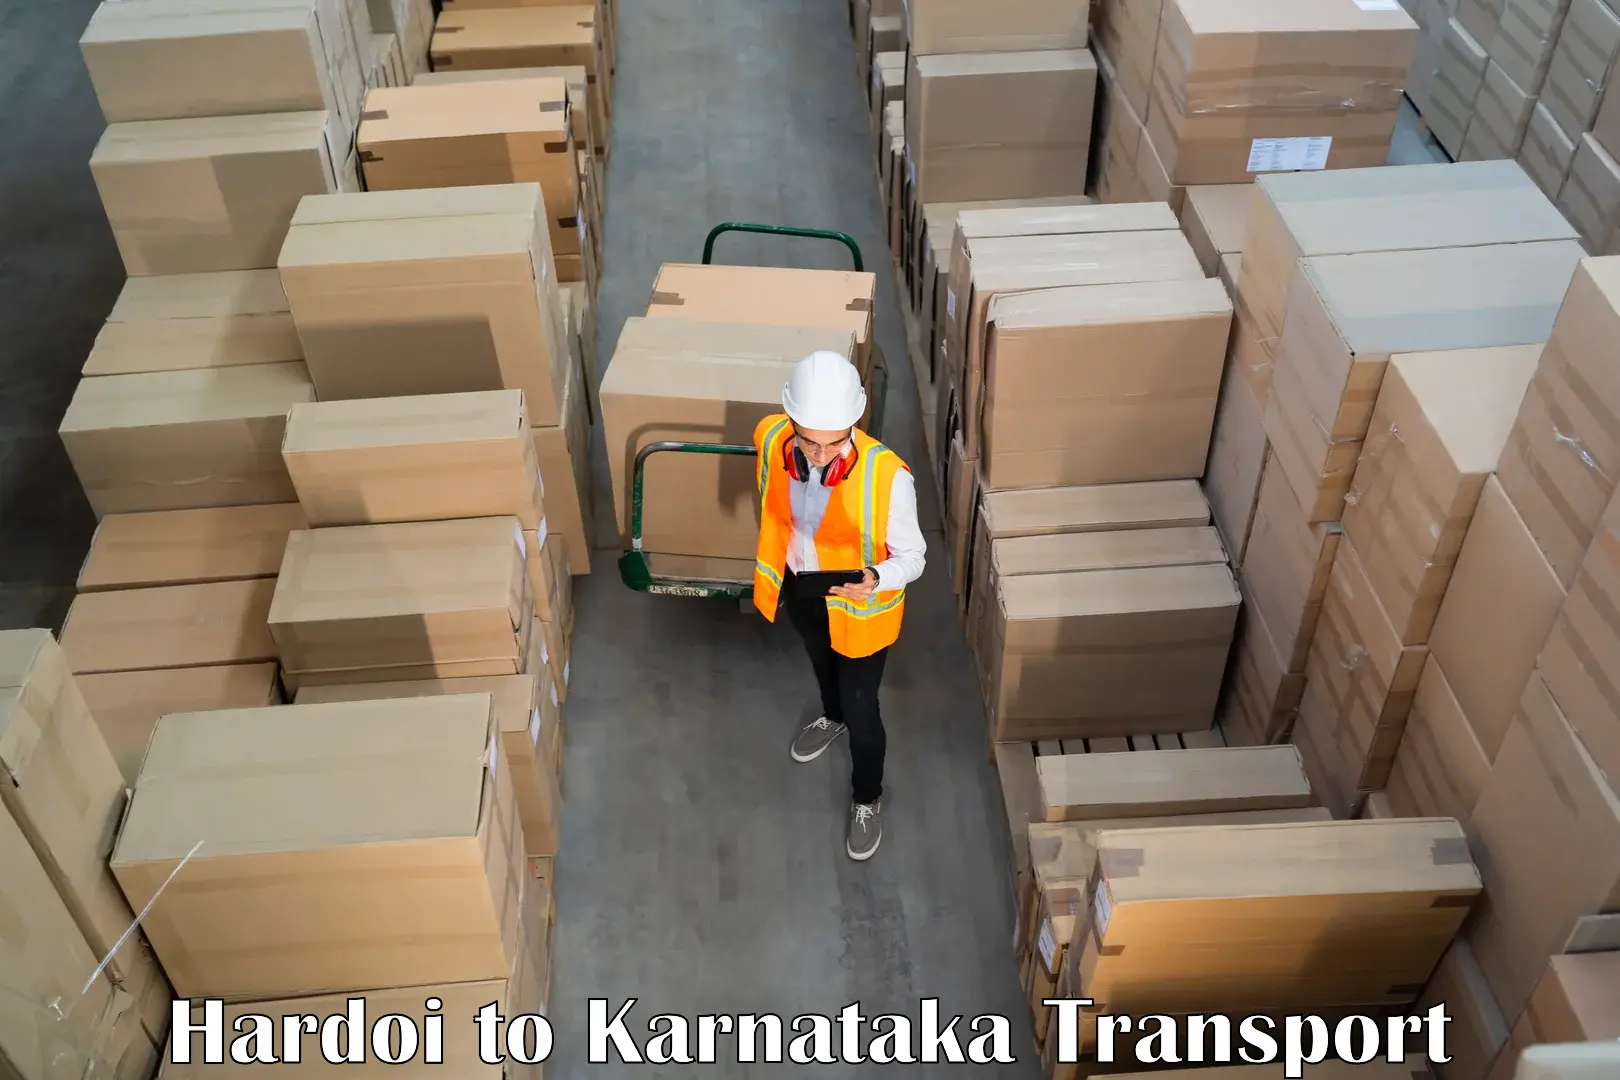 Cargo transport services Hardoi to Basavana Bagewadi